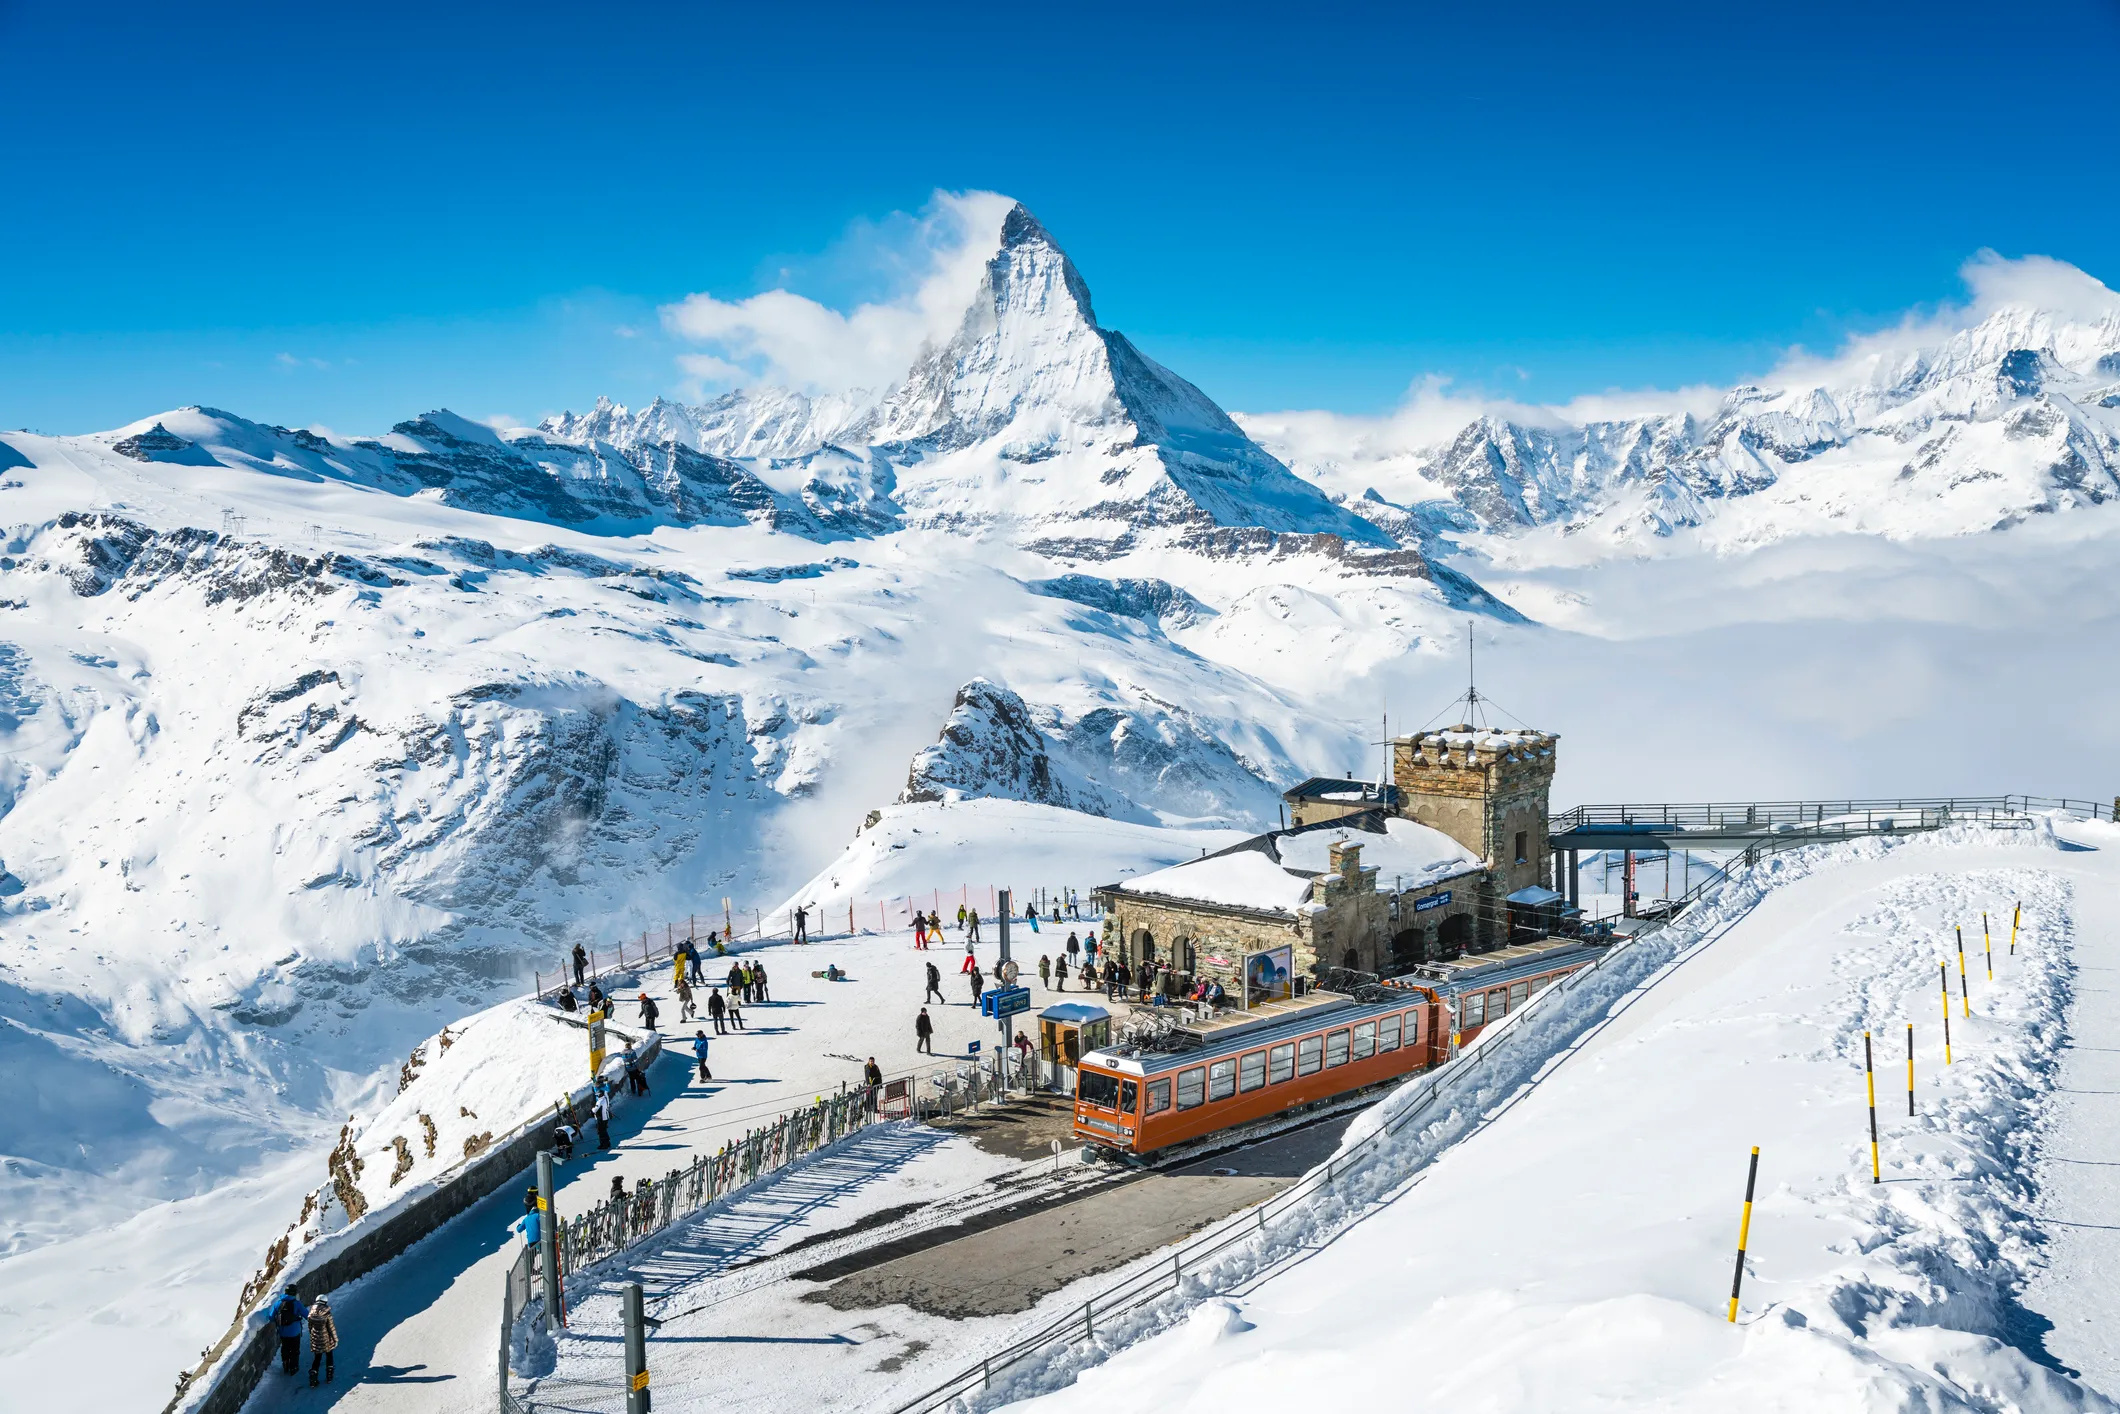 Rick Steves, Swiss adventure, Hyped destination, Matterhorn allure, 2120x1420 HD Desktop